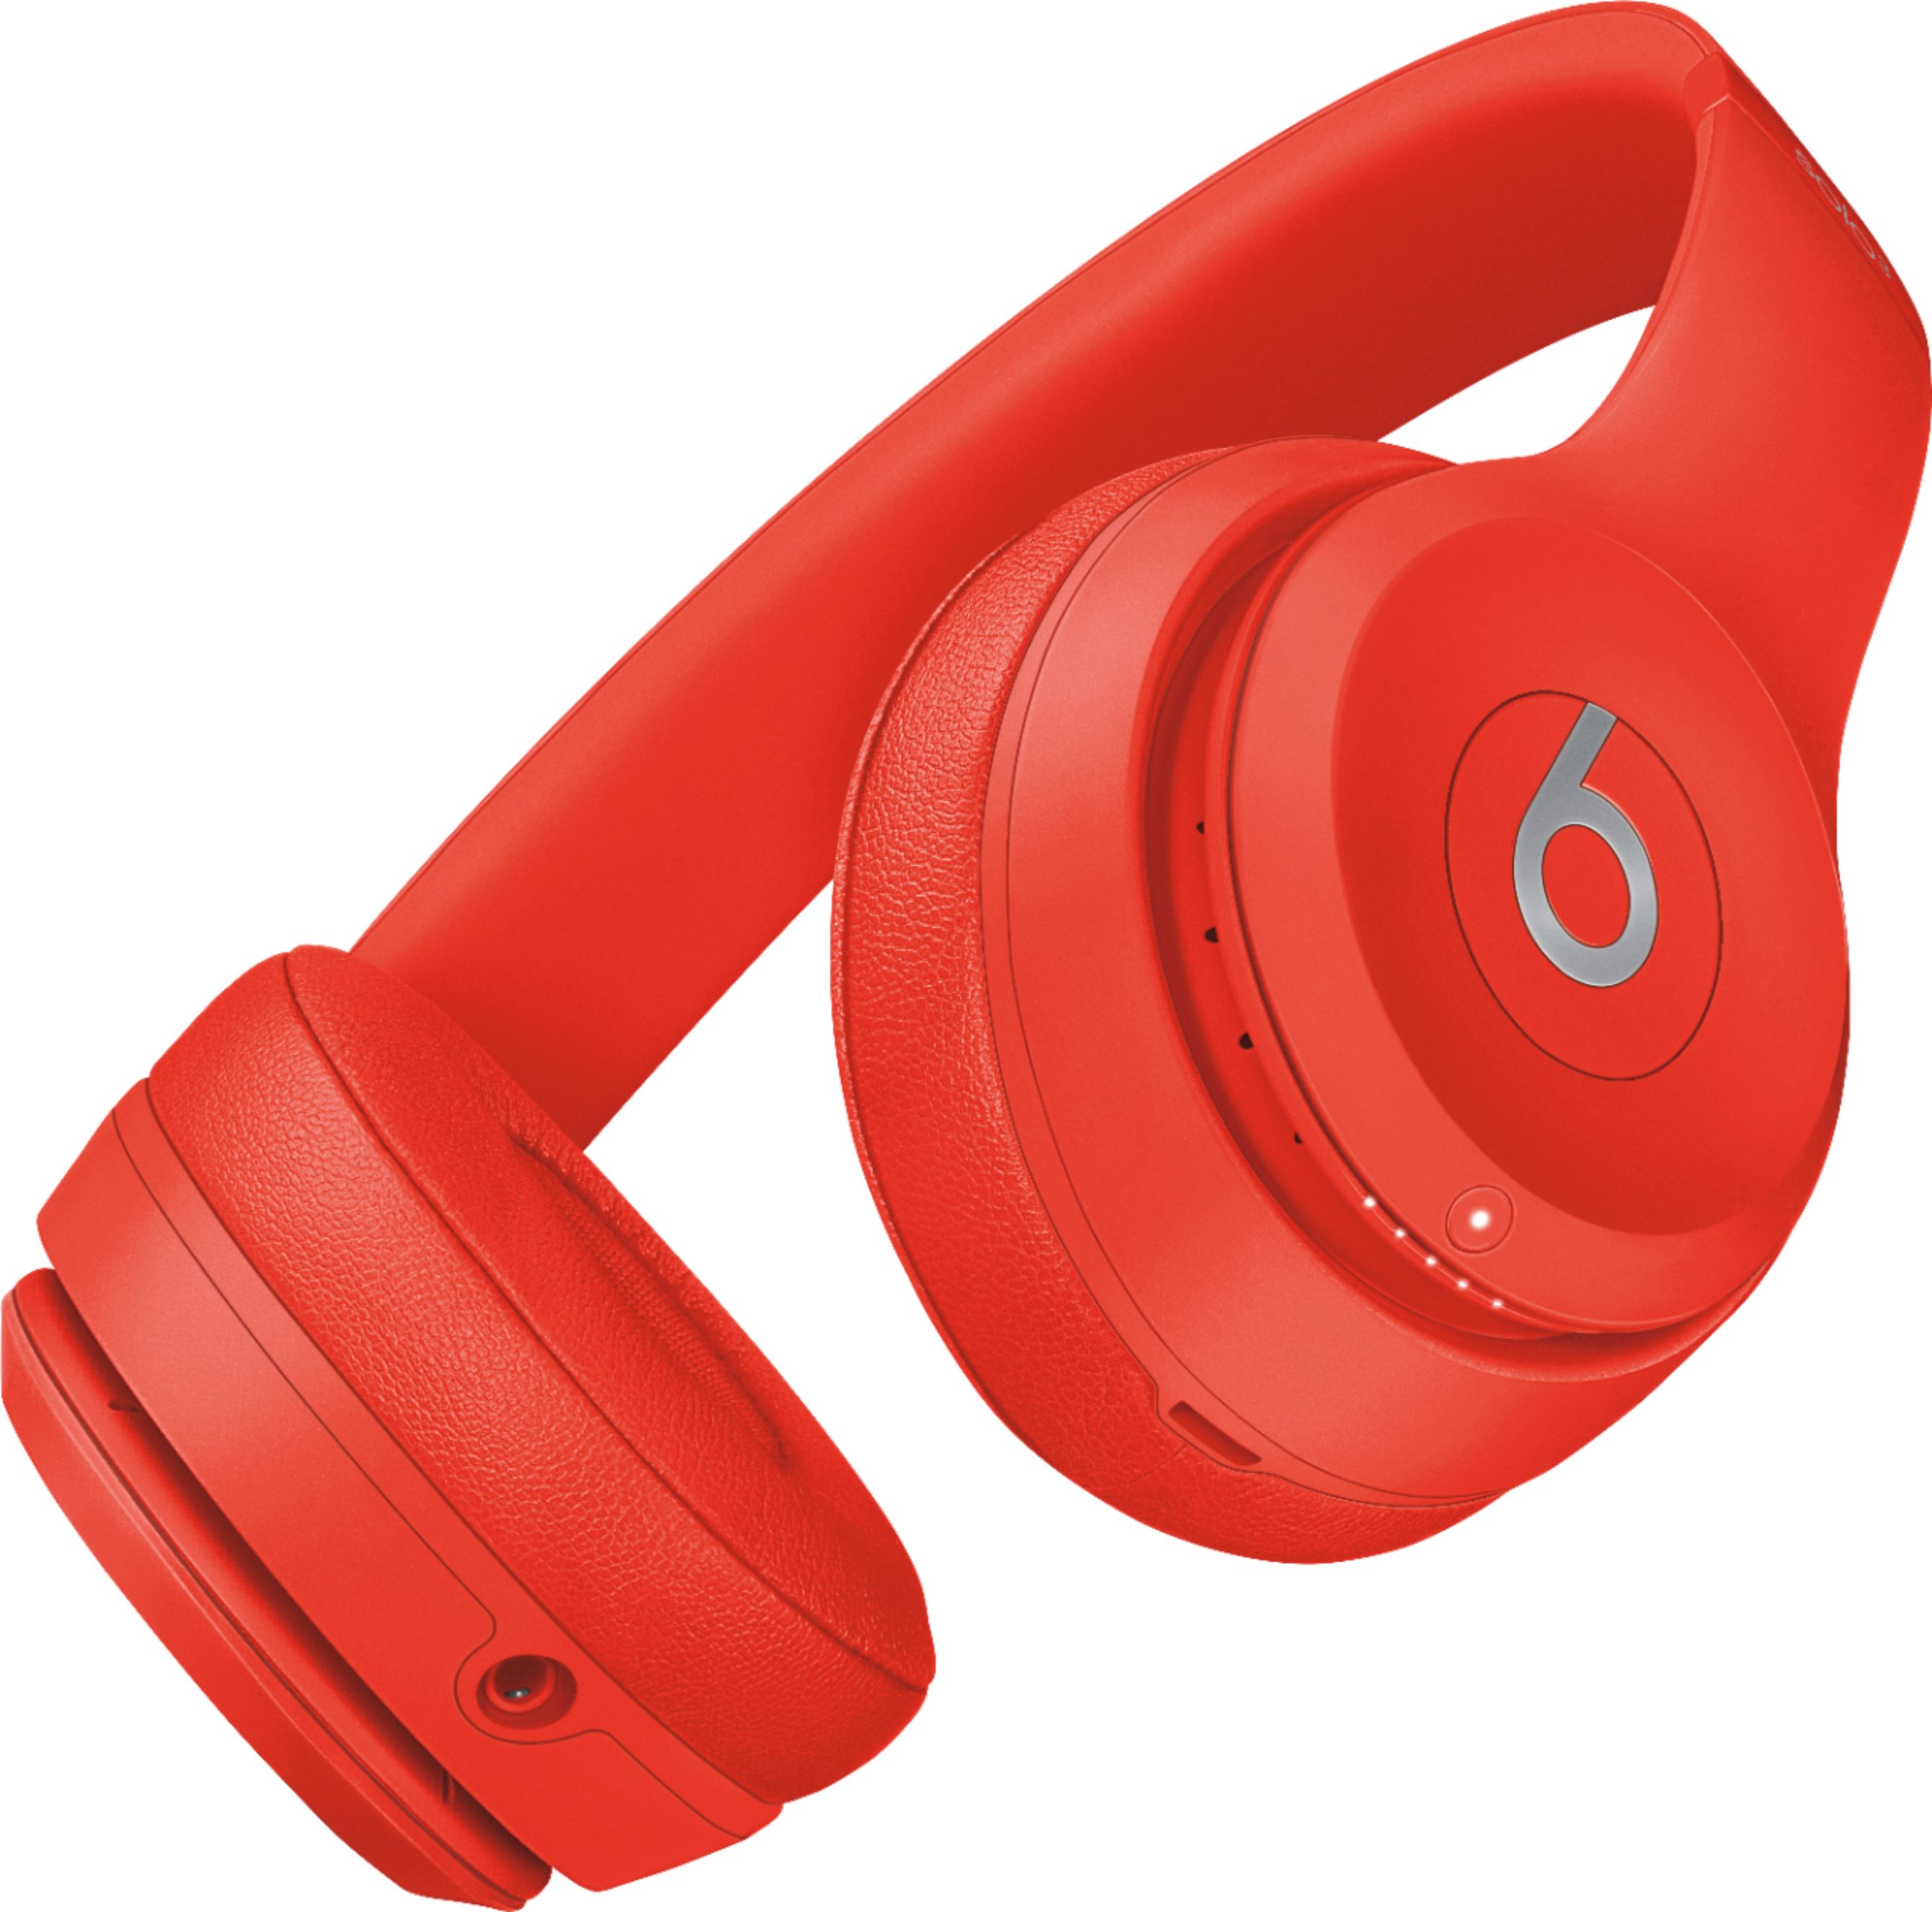 Beats Dre Solo³ Wireless On-Ear Headphones Citrus Red MX472LL/A Best Buy